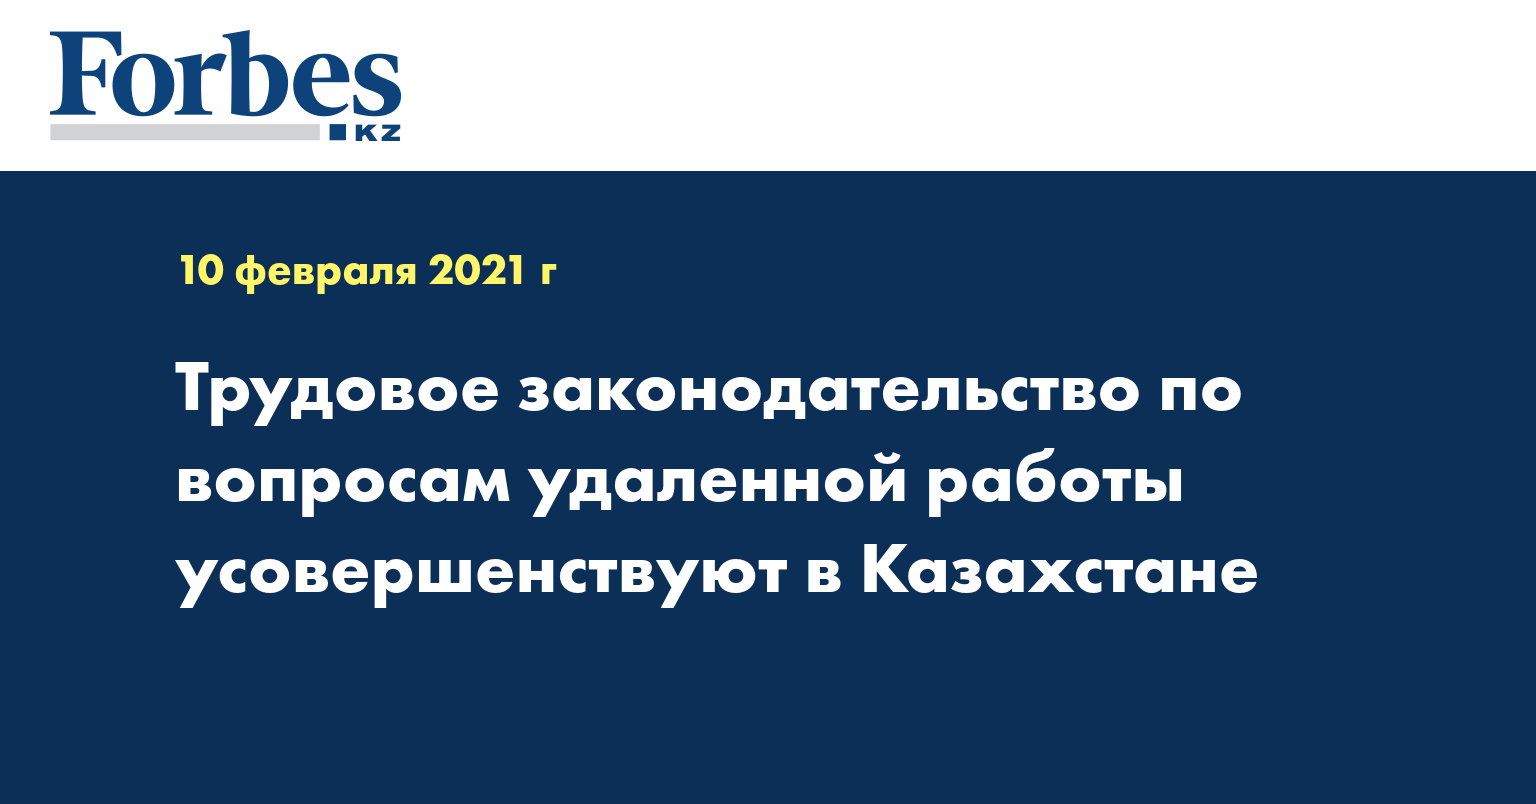 Трудовое законодательство по вопросам удаленной работы усовершенствуют в Казахстане